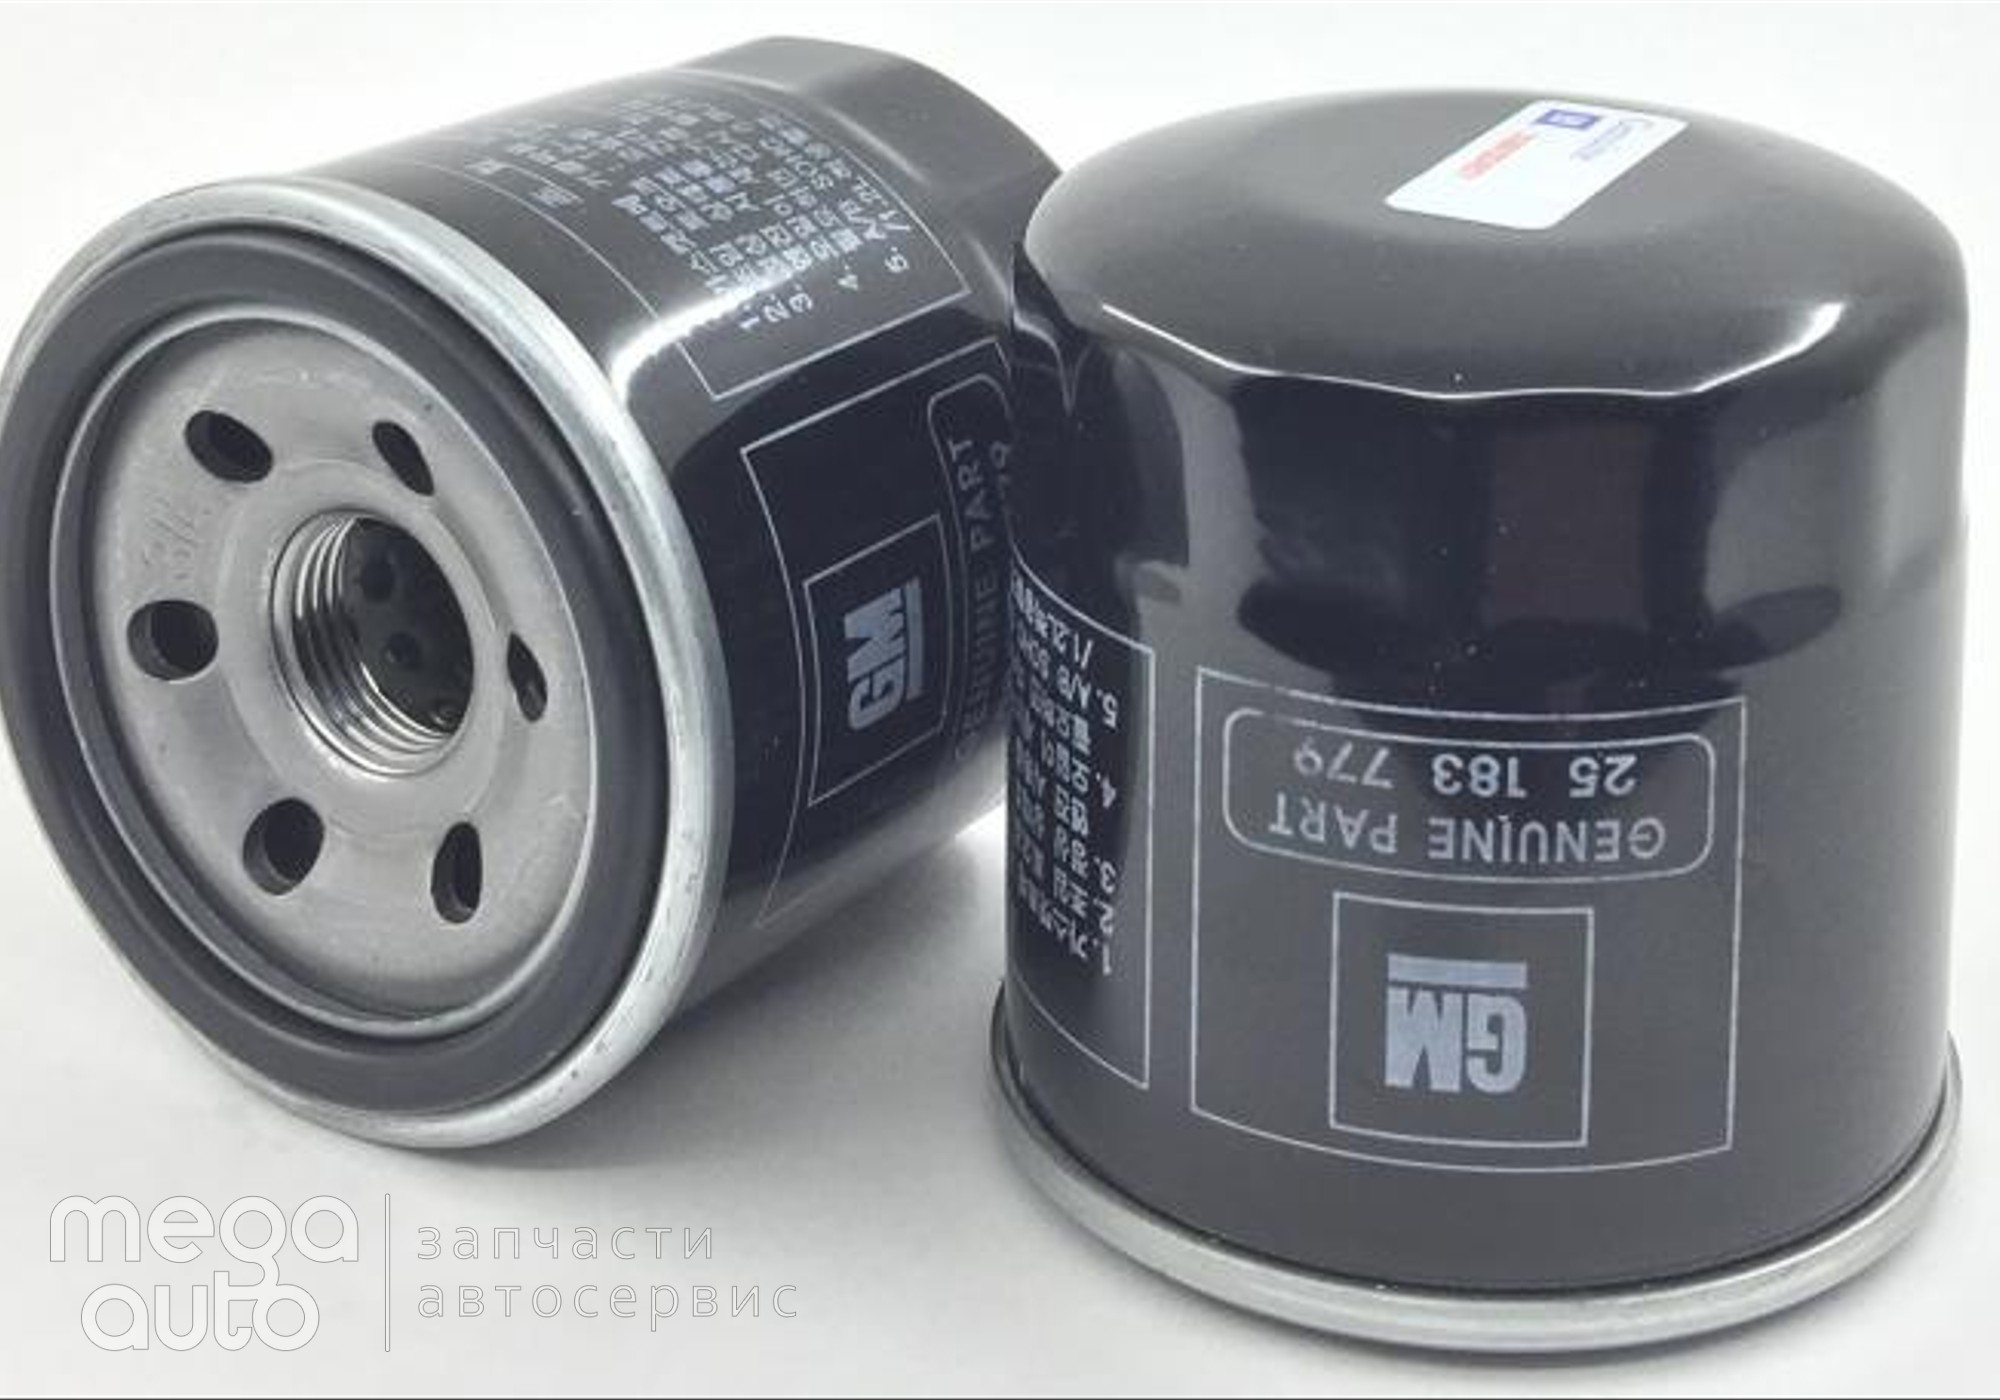 25183779 Масляный фильтр шевроле, део, сузуки(GM) для Nissan Micra K10 (с 1982 по 1992)